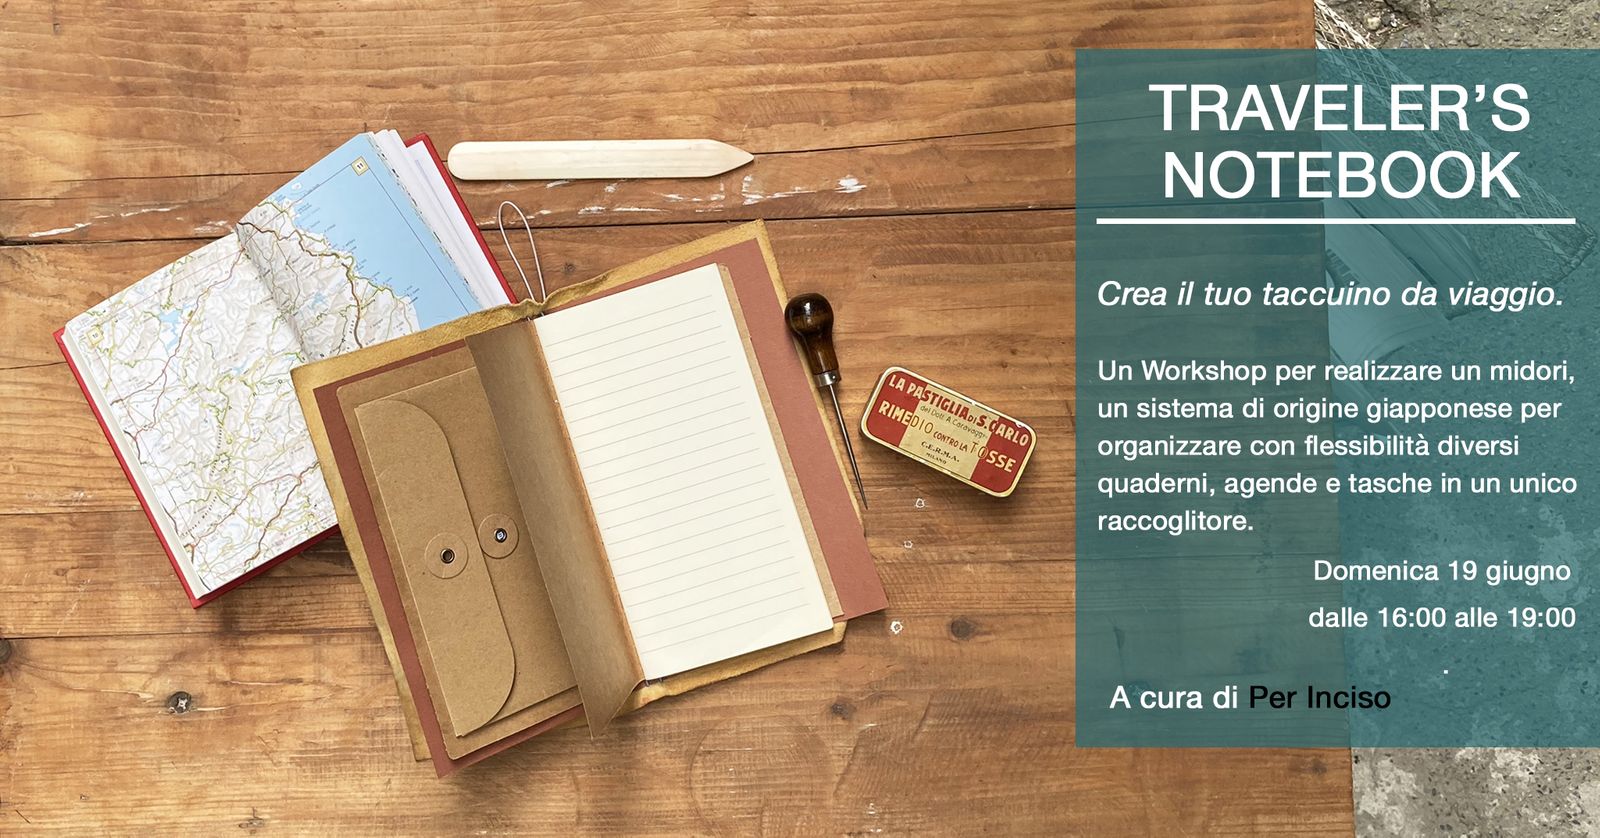 Traveler's Notebook - Crea il tuo taccuino di viaggio